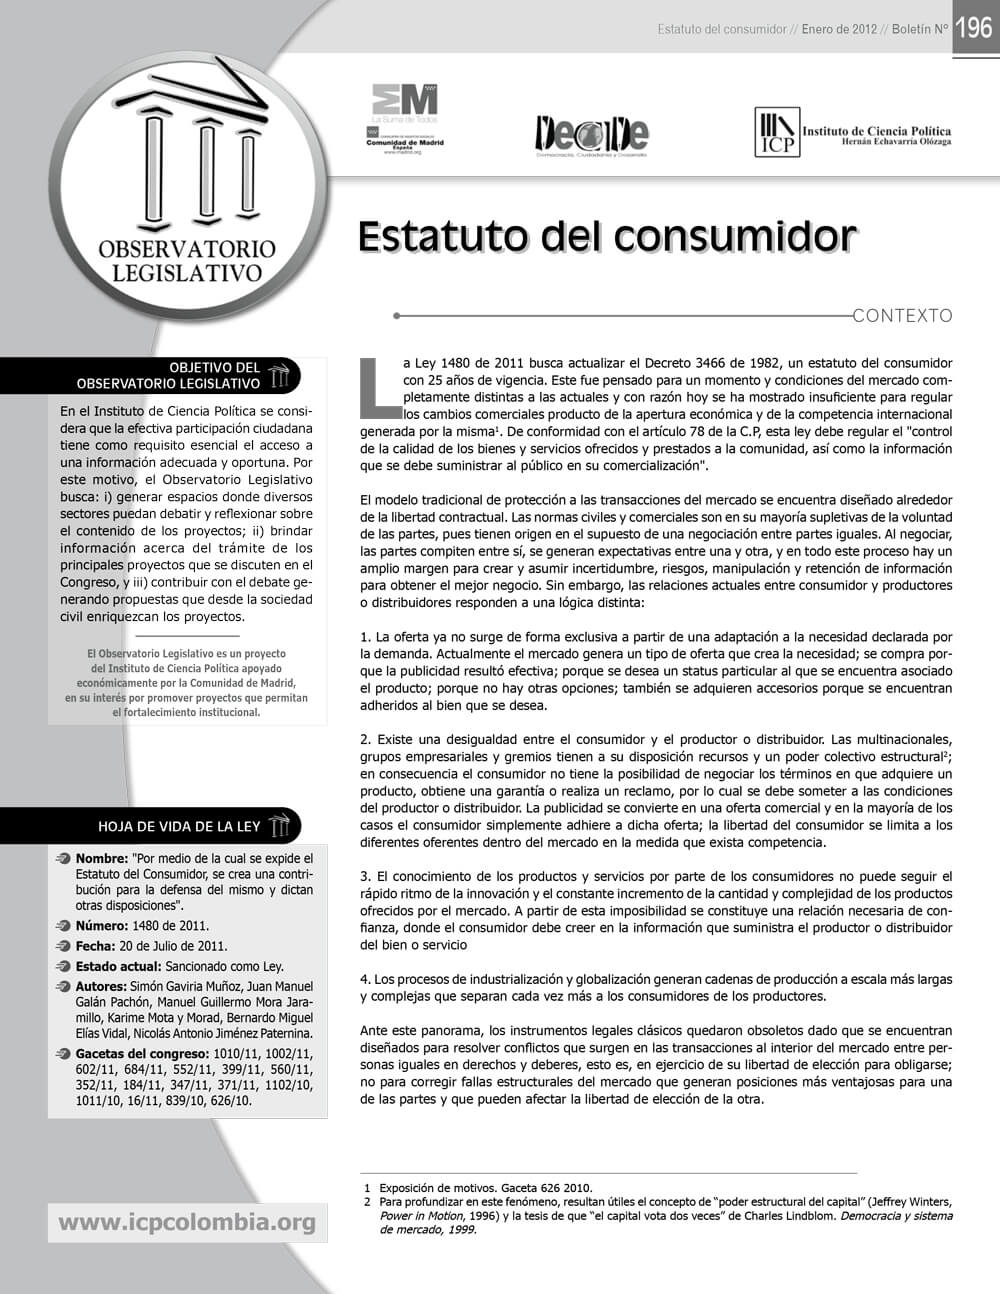 Estatuto del consumidor colombia pdf